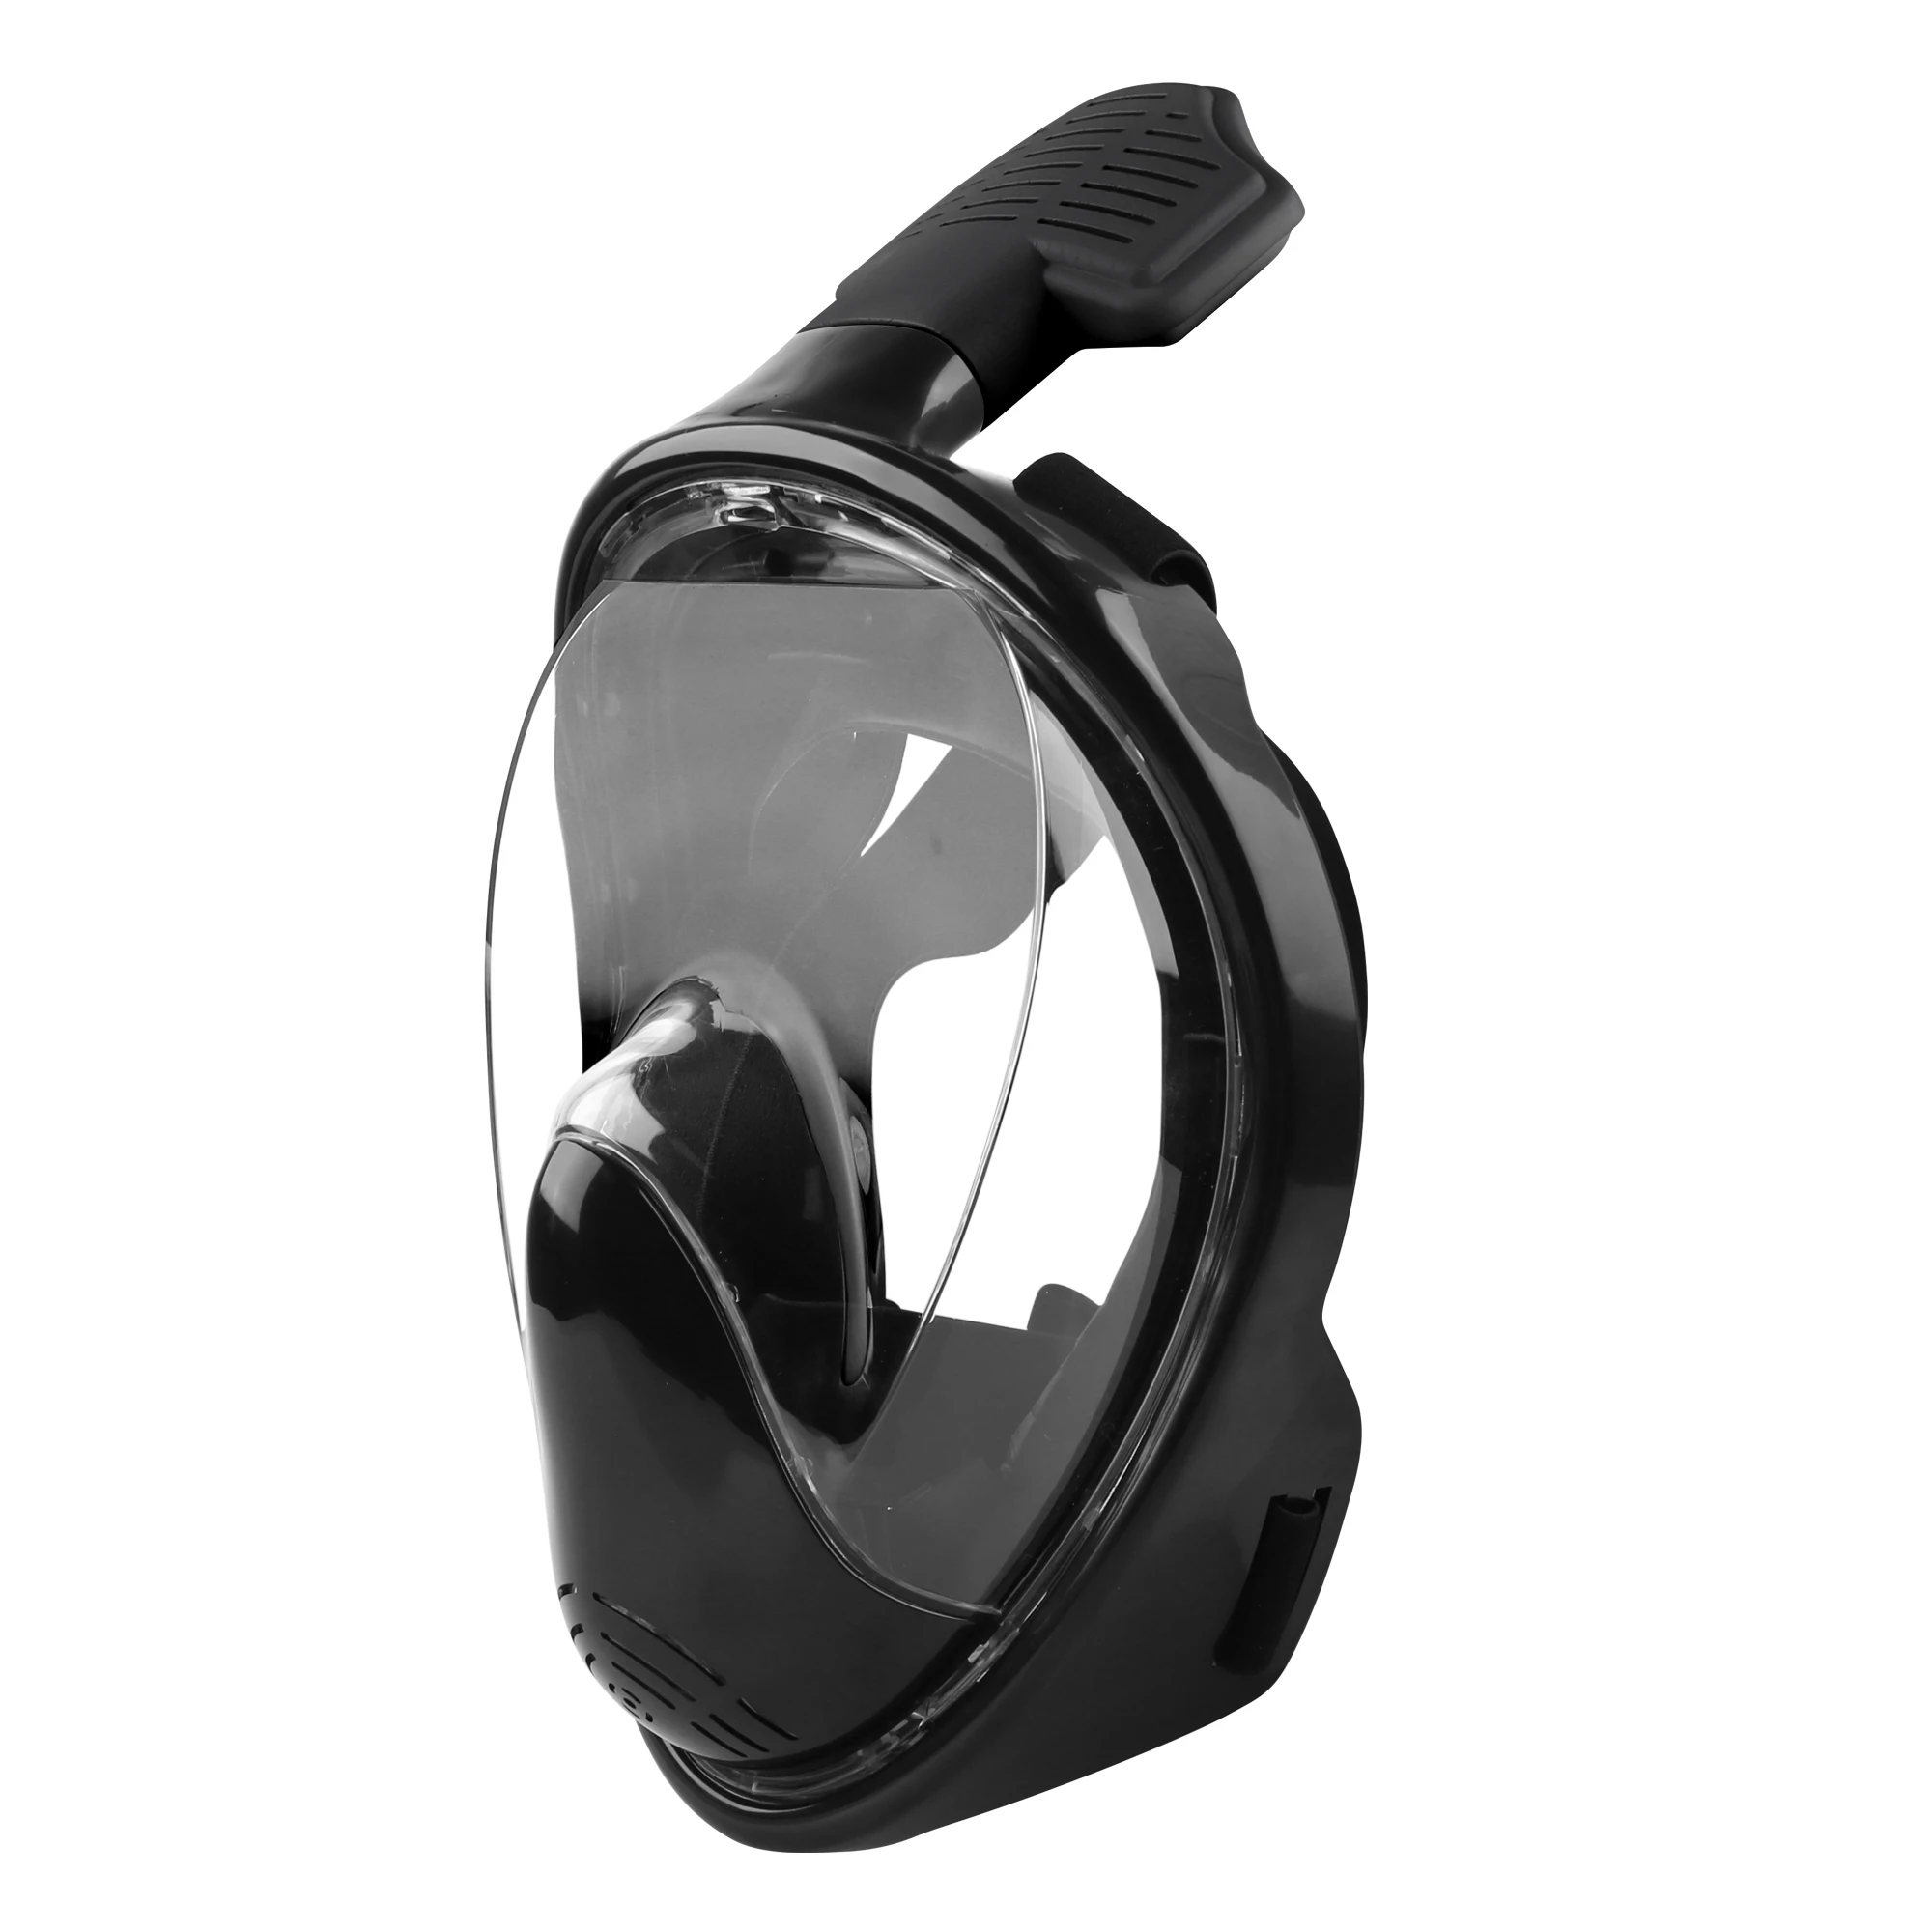 Turn Snorkel Mask Full Face  O-xygen Breathing Masks For Adult Kids 180 Degree View Diving Snorkeling Mask Snorkel Set